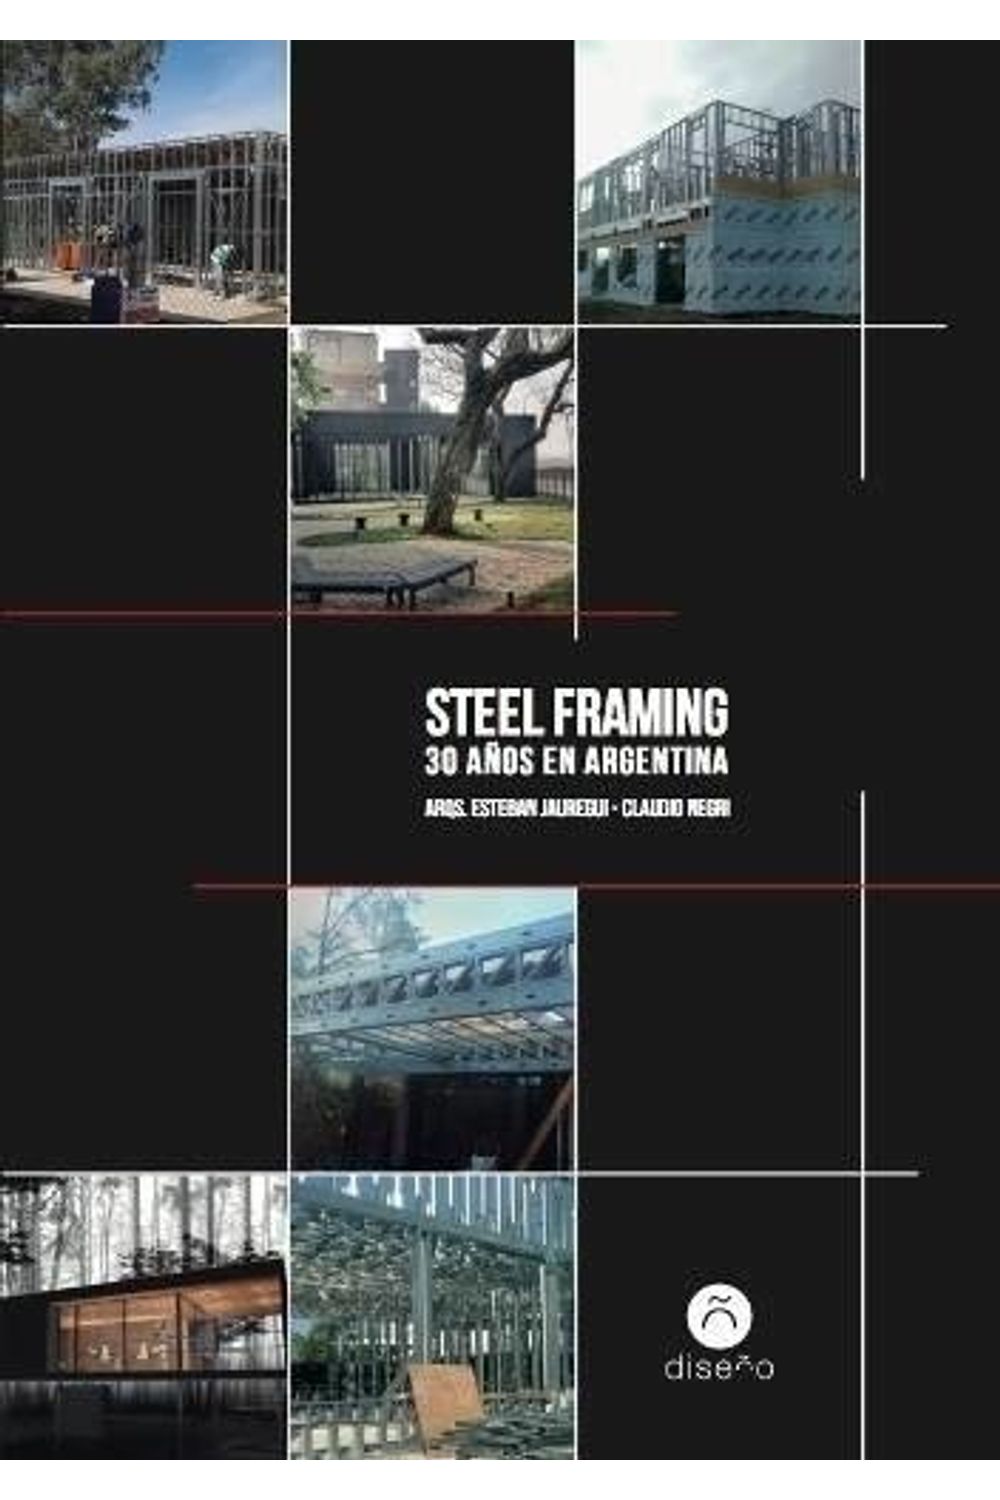 bm-steel-framing-30-anos-en-argentina-nobukodiseno-editorial-9789874000804